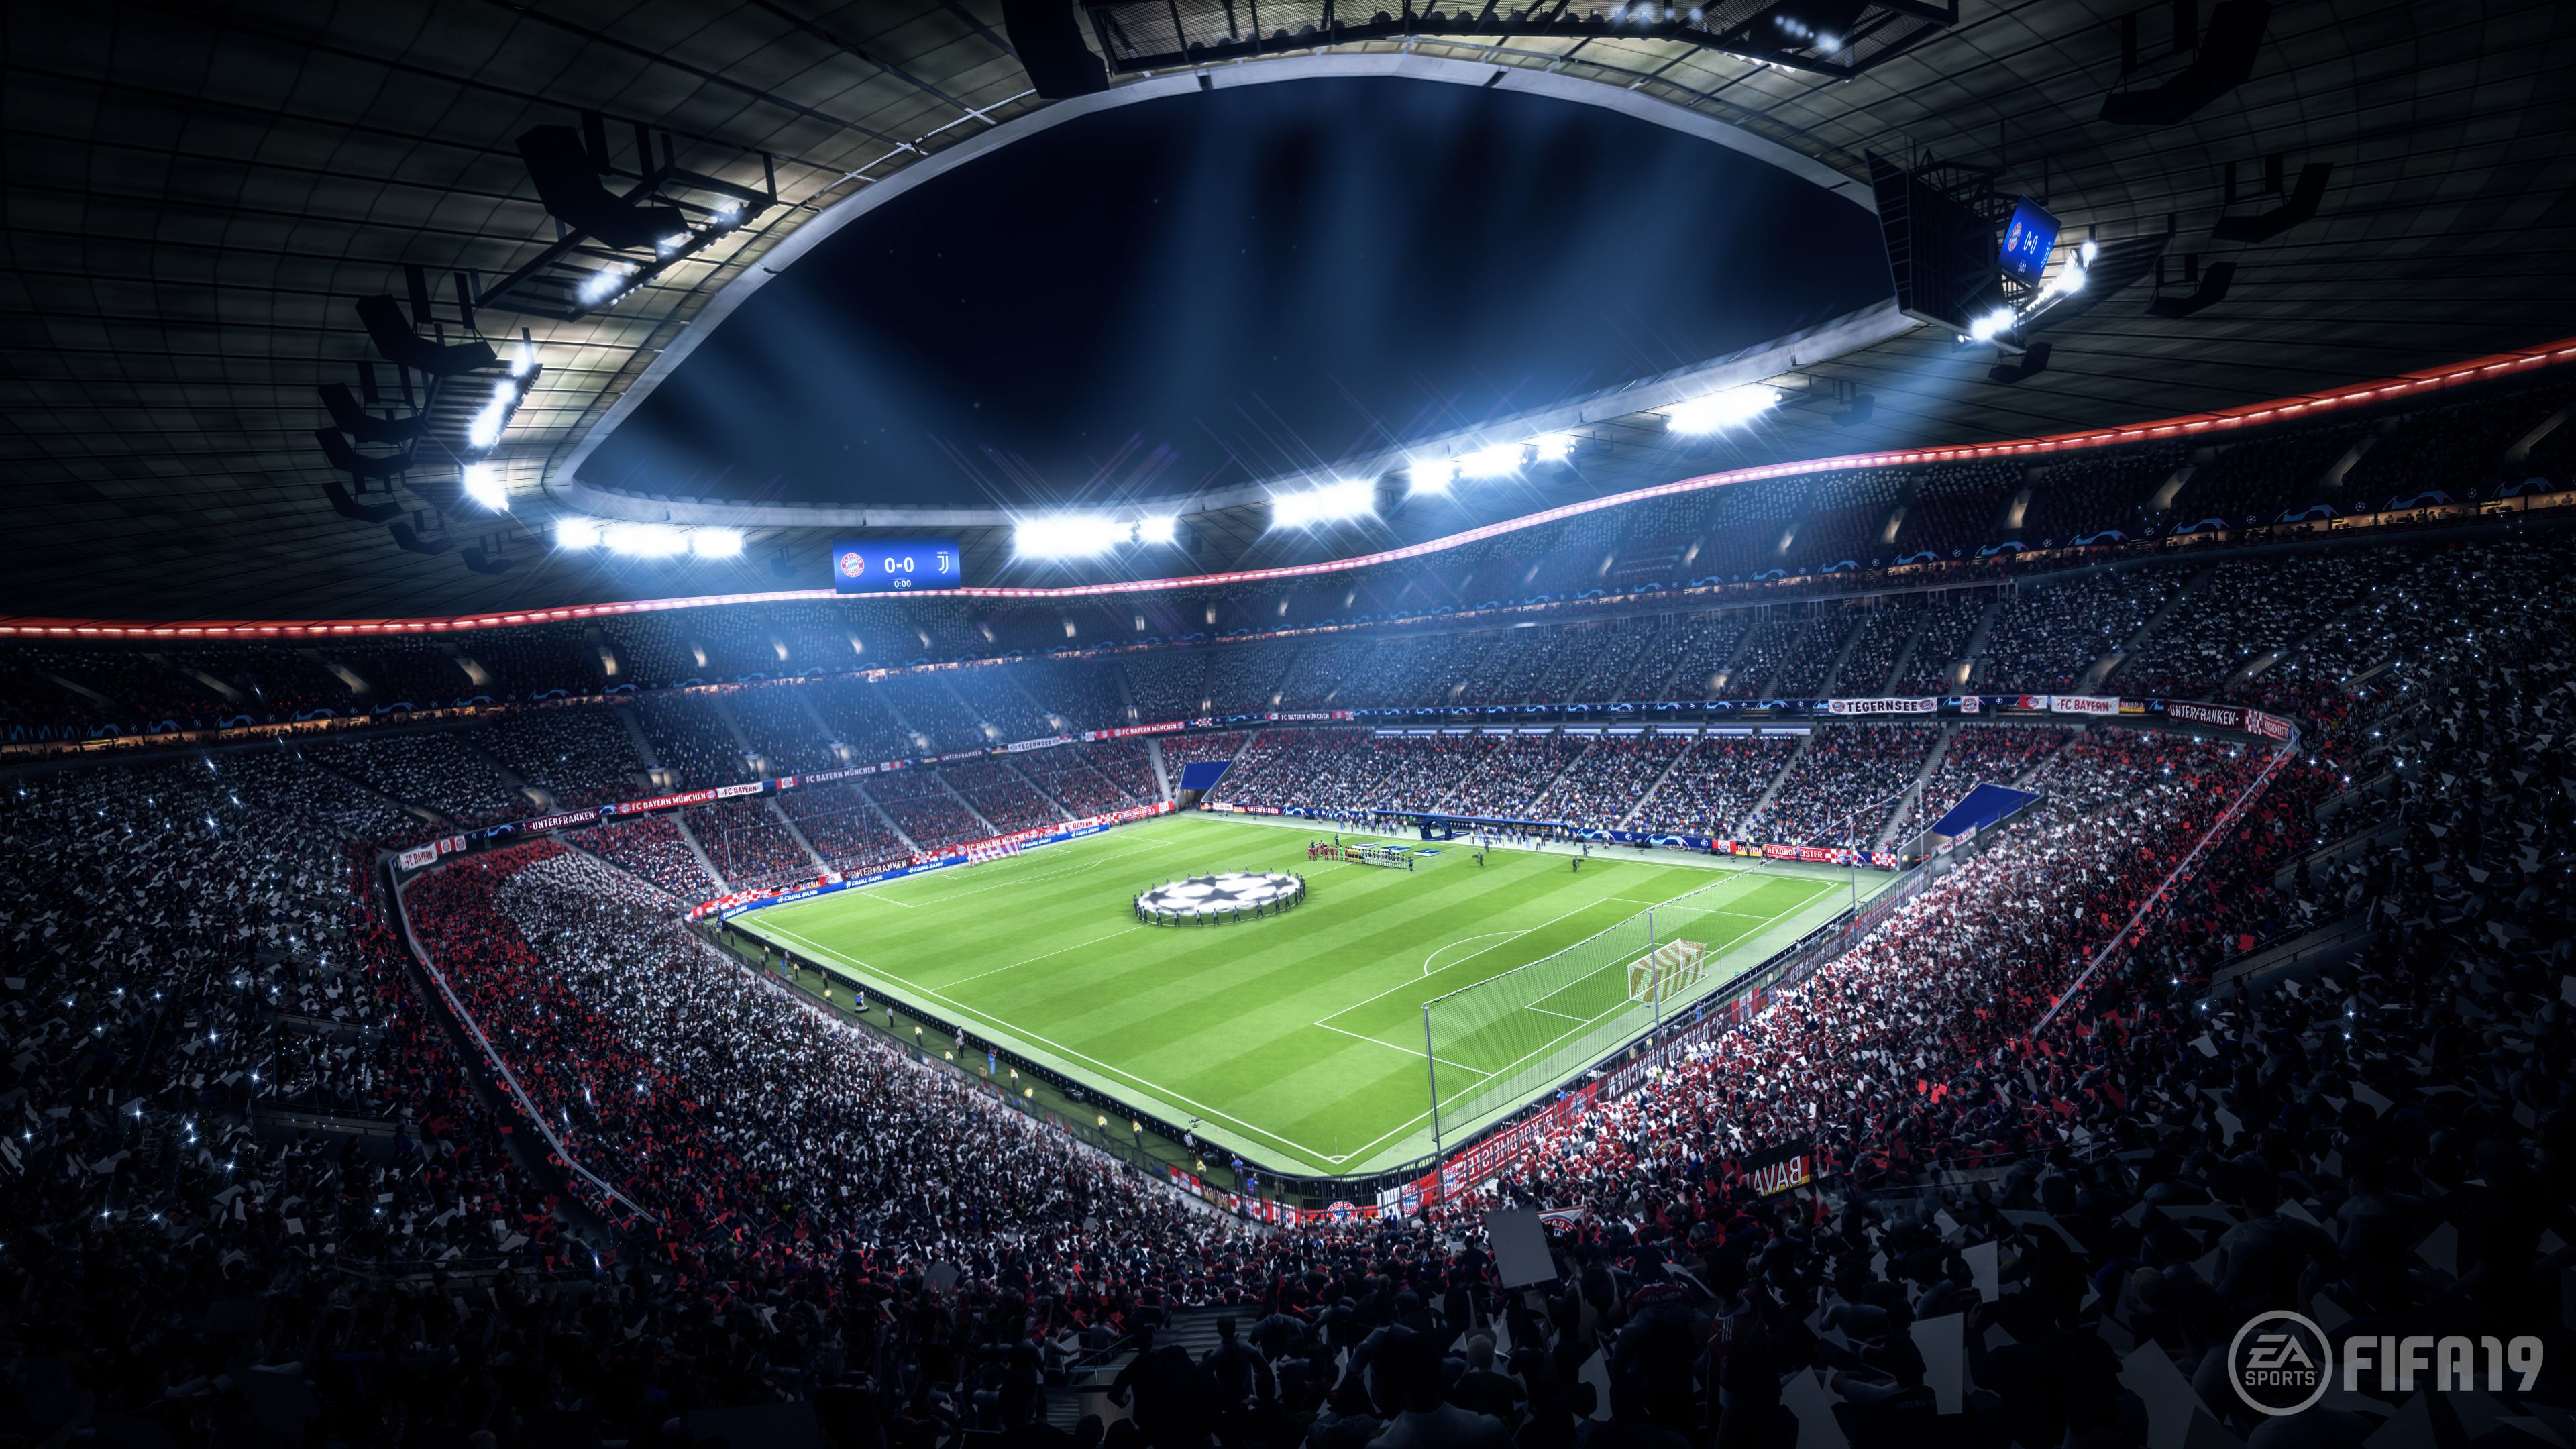 Fifa 19 Stadium 4k, Juegos HD, Fondos de pantalla 4k, Imágenes, Fondos